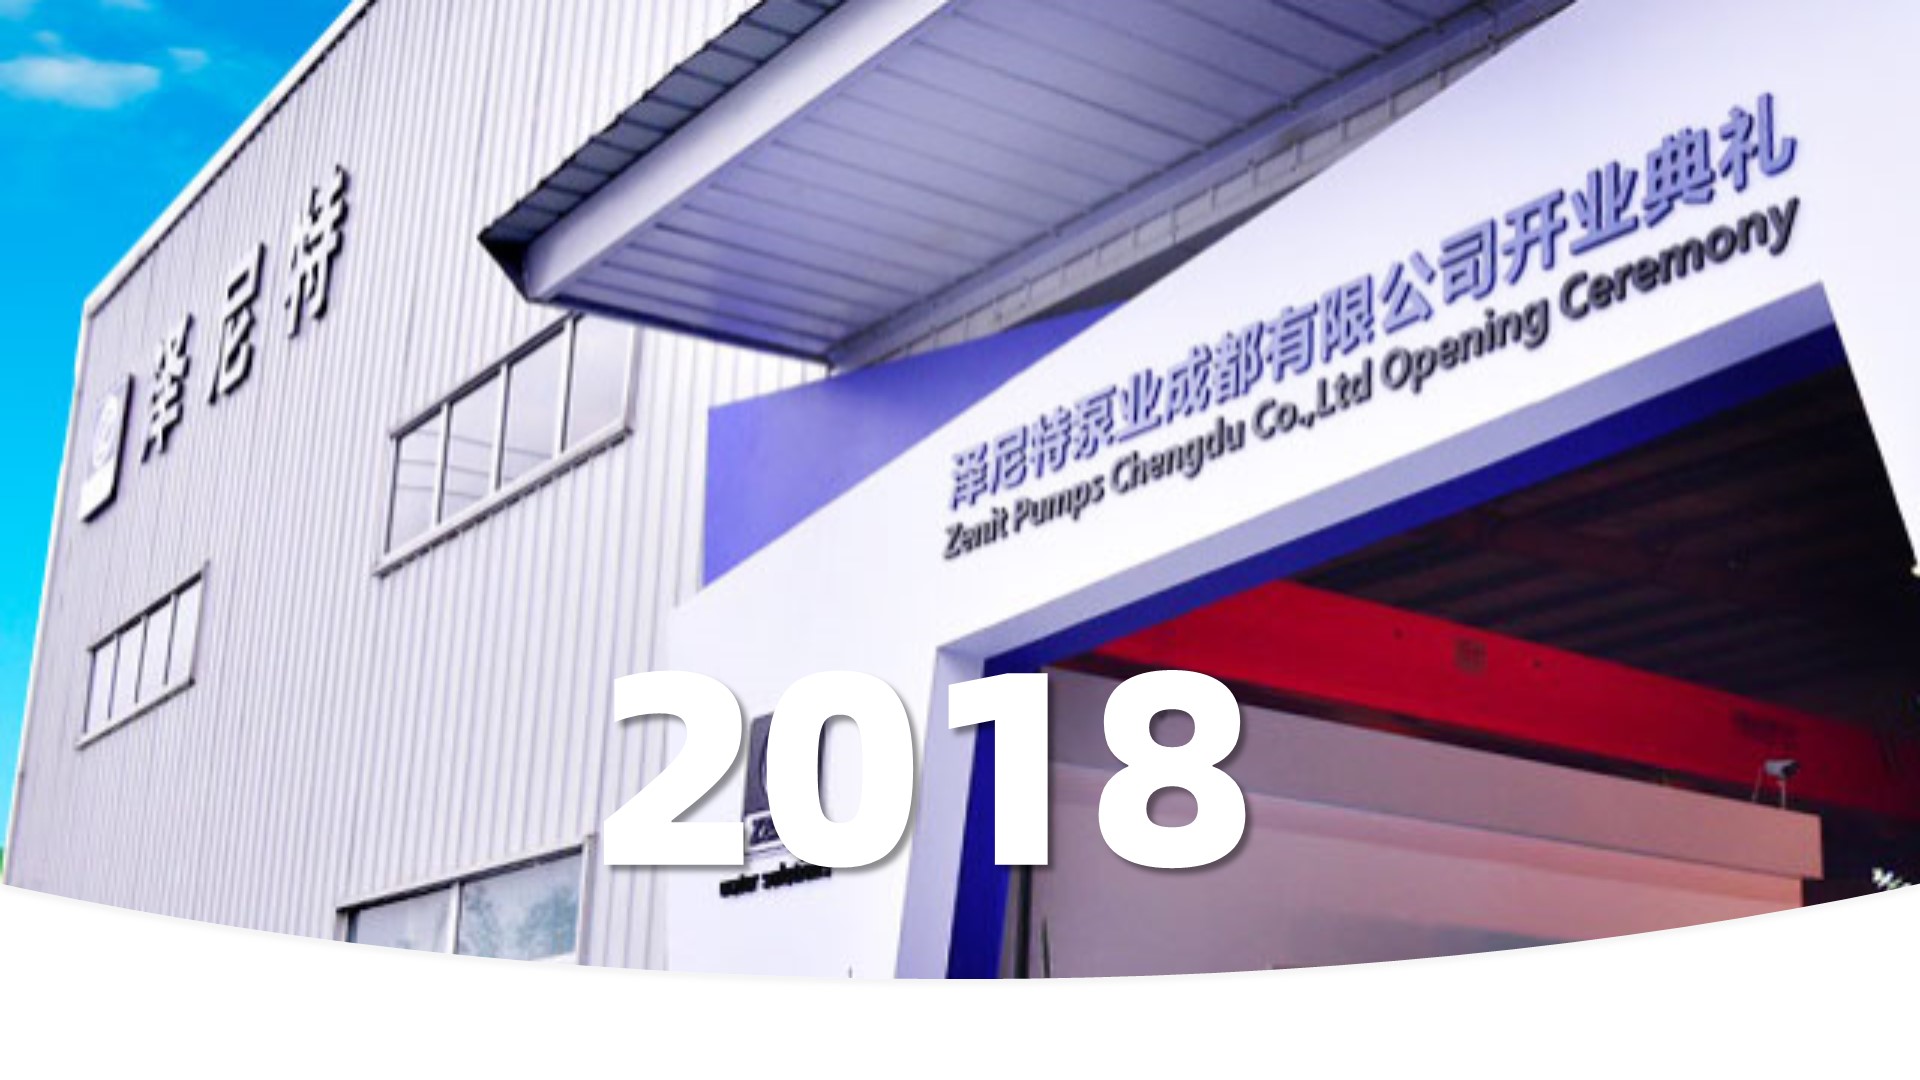 扎根中国11年后继苏州成立后的泽尼特中国第2个公司--泽尼特泵业成都有限公司正式成立。